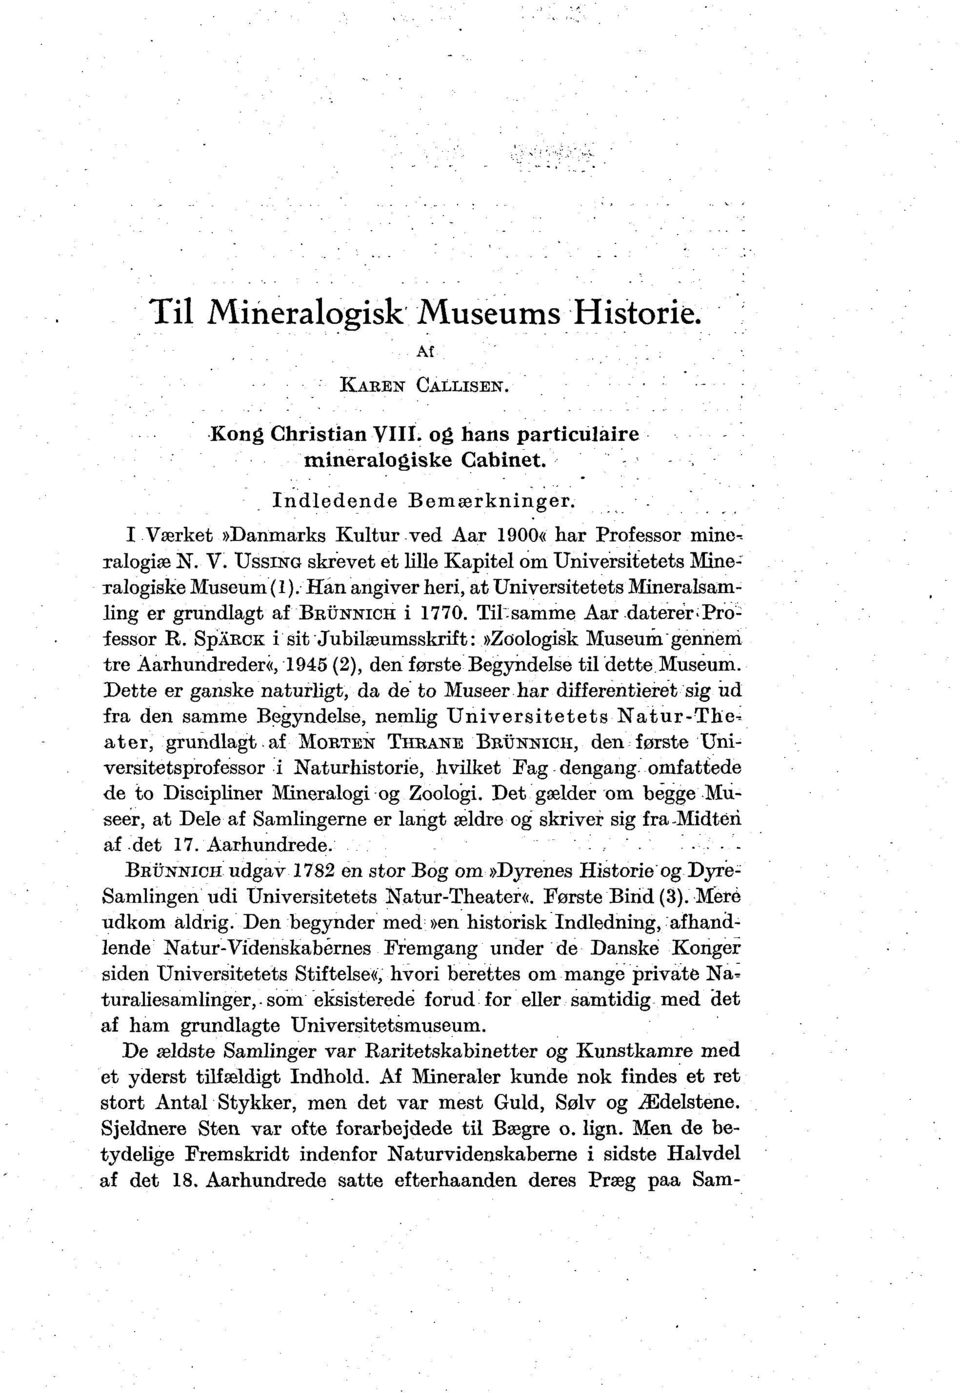 Han angiver heri, at Universitetets Mineralsamling er grundlagt af BKÜNNICH i 1770. Til-samme Aar daterer'professor R.